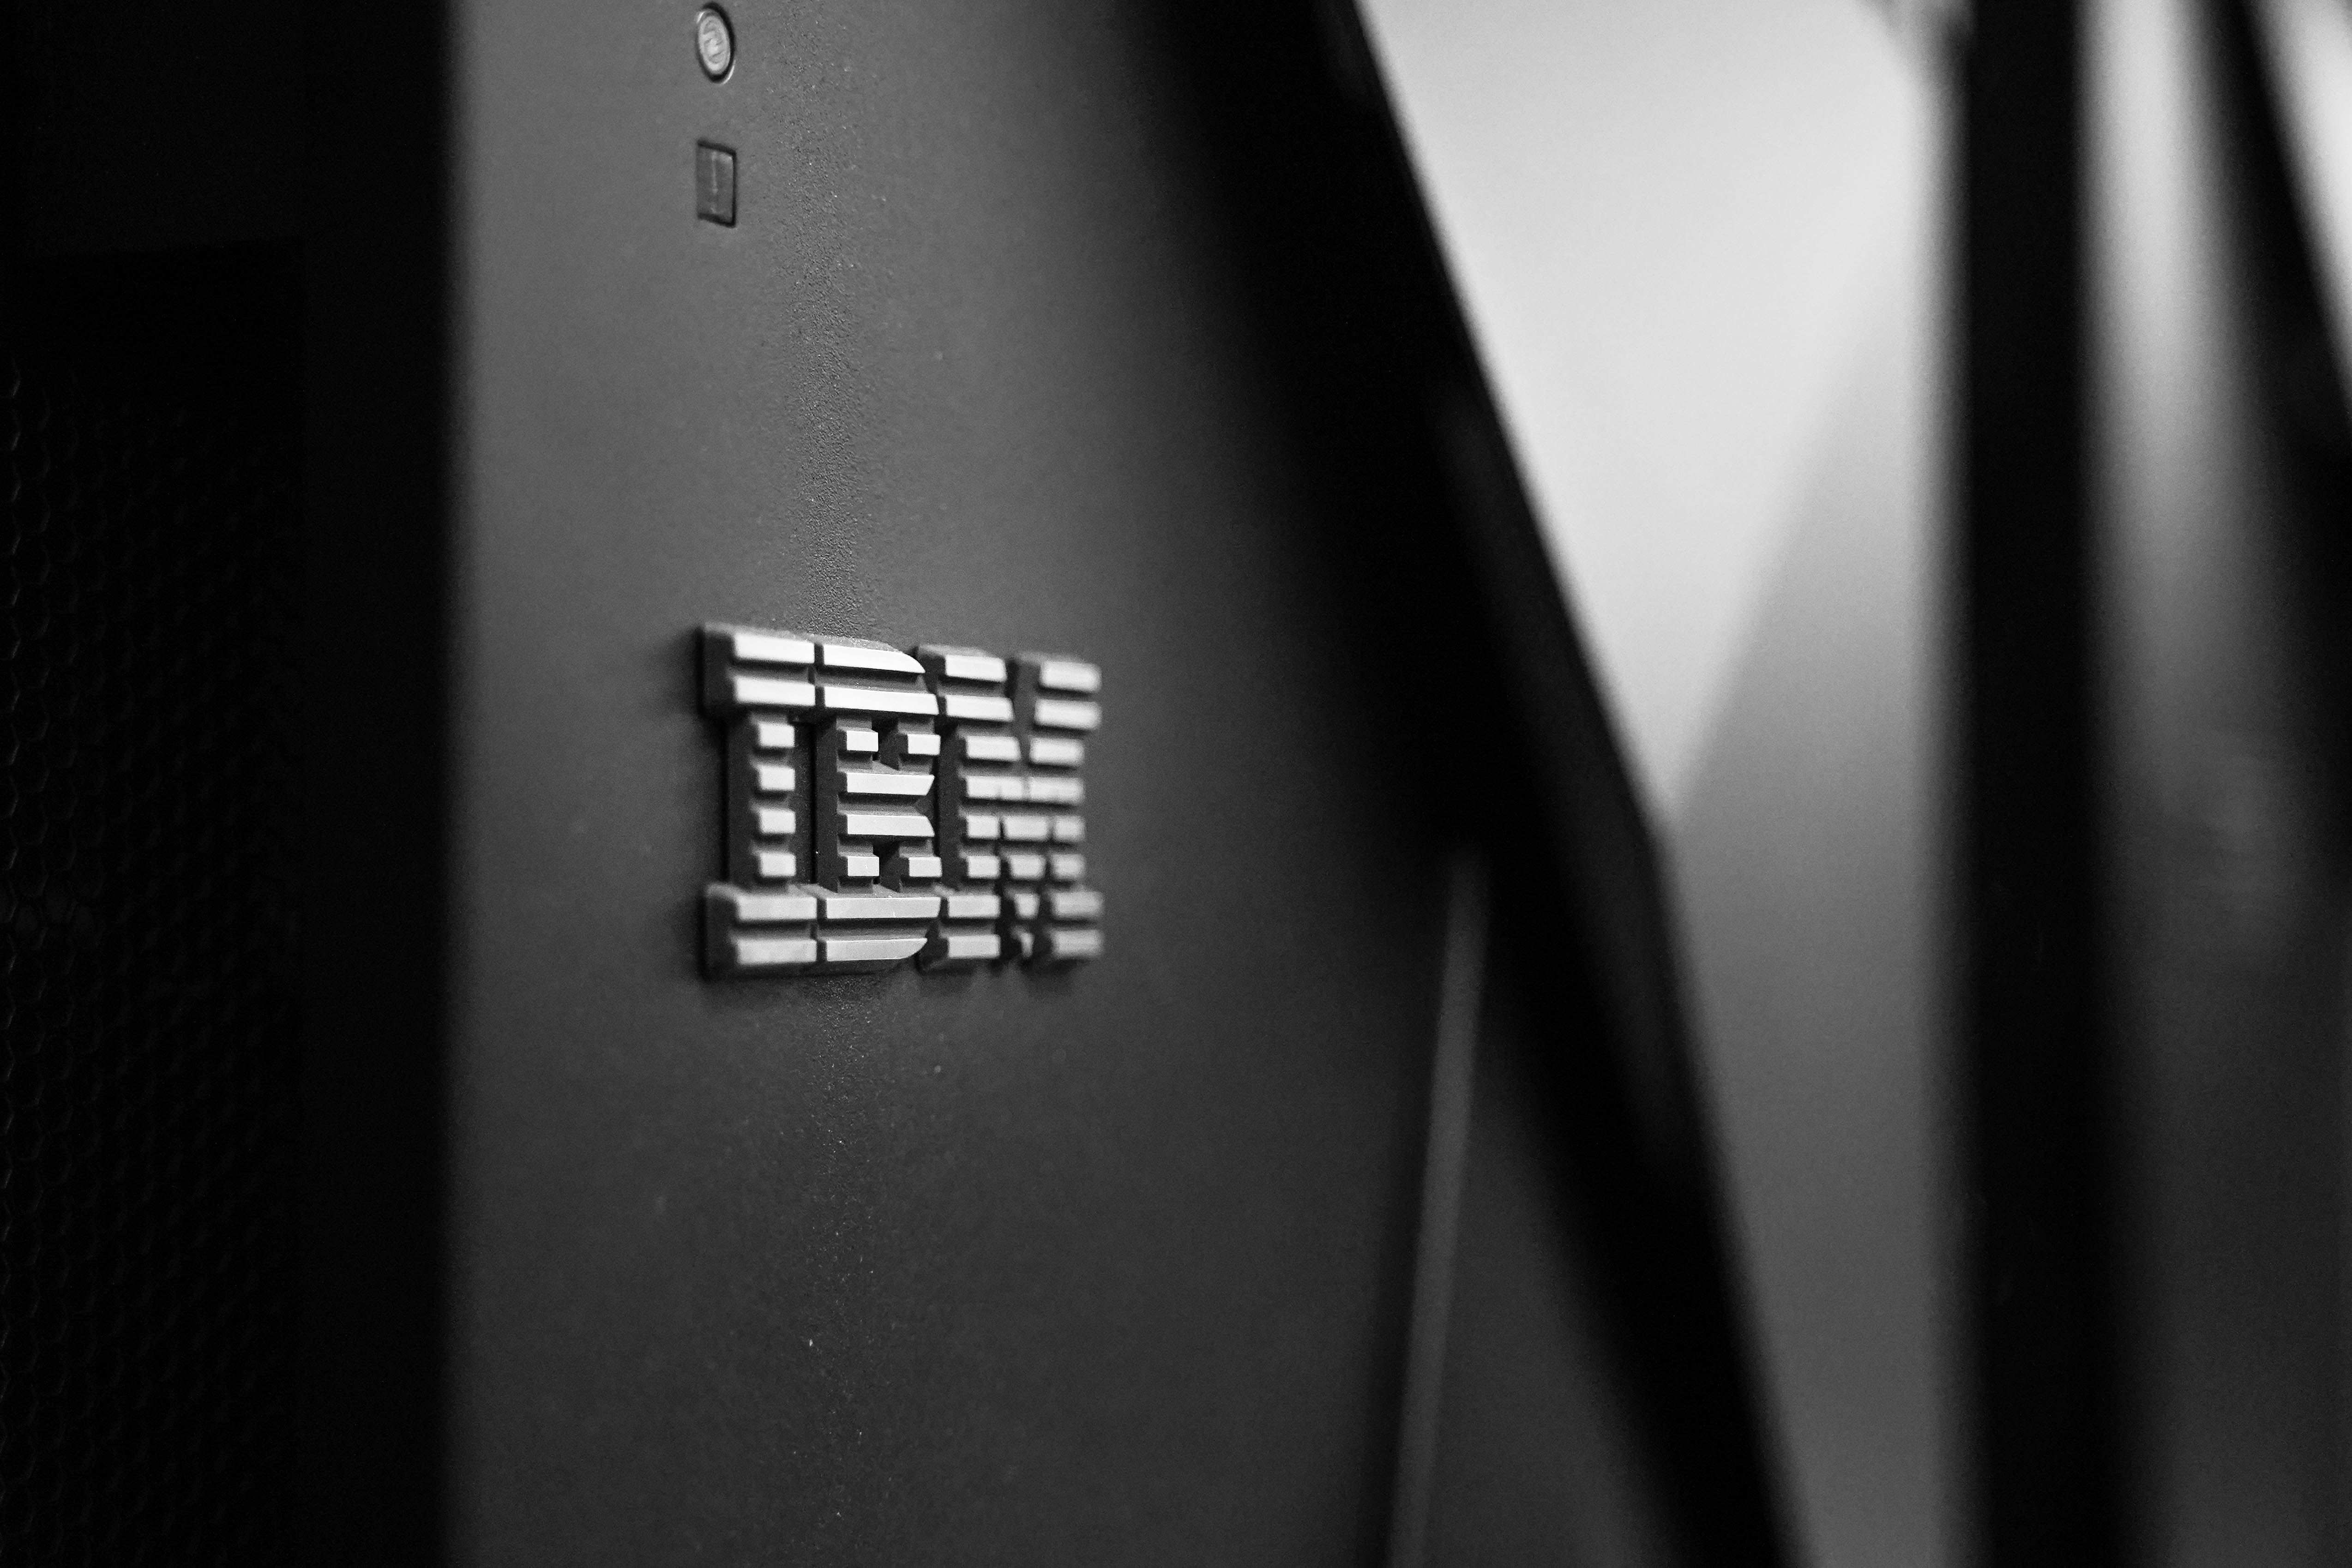 Mécontent des contenus discriminants et haineux qui se multiplient sur X.com (ex-Twitter), IBM retire toutes ses publicités